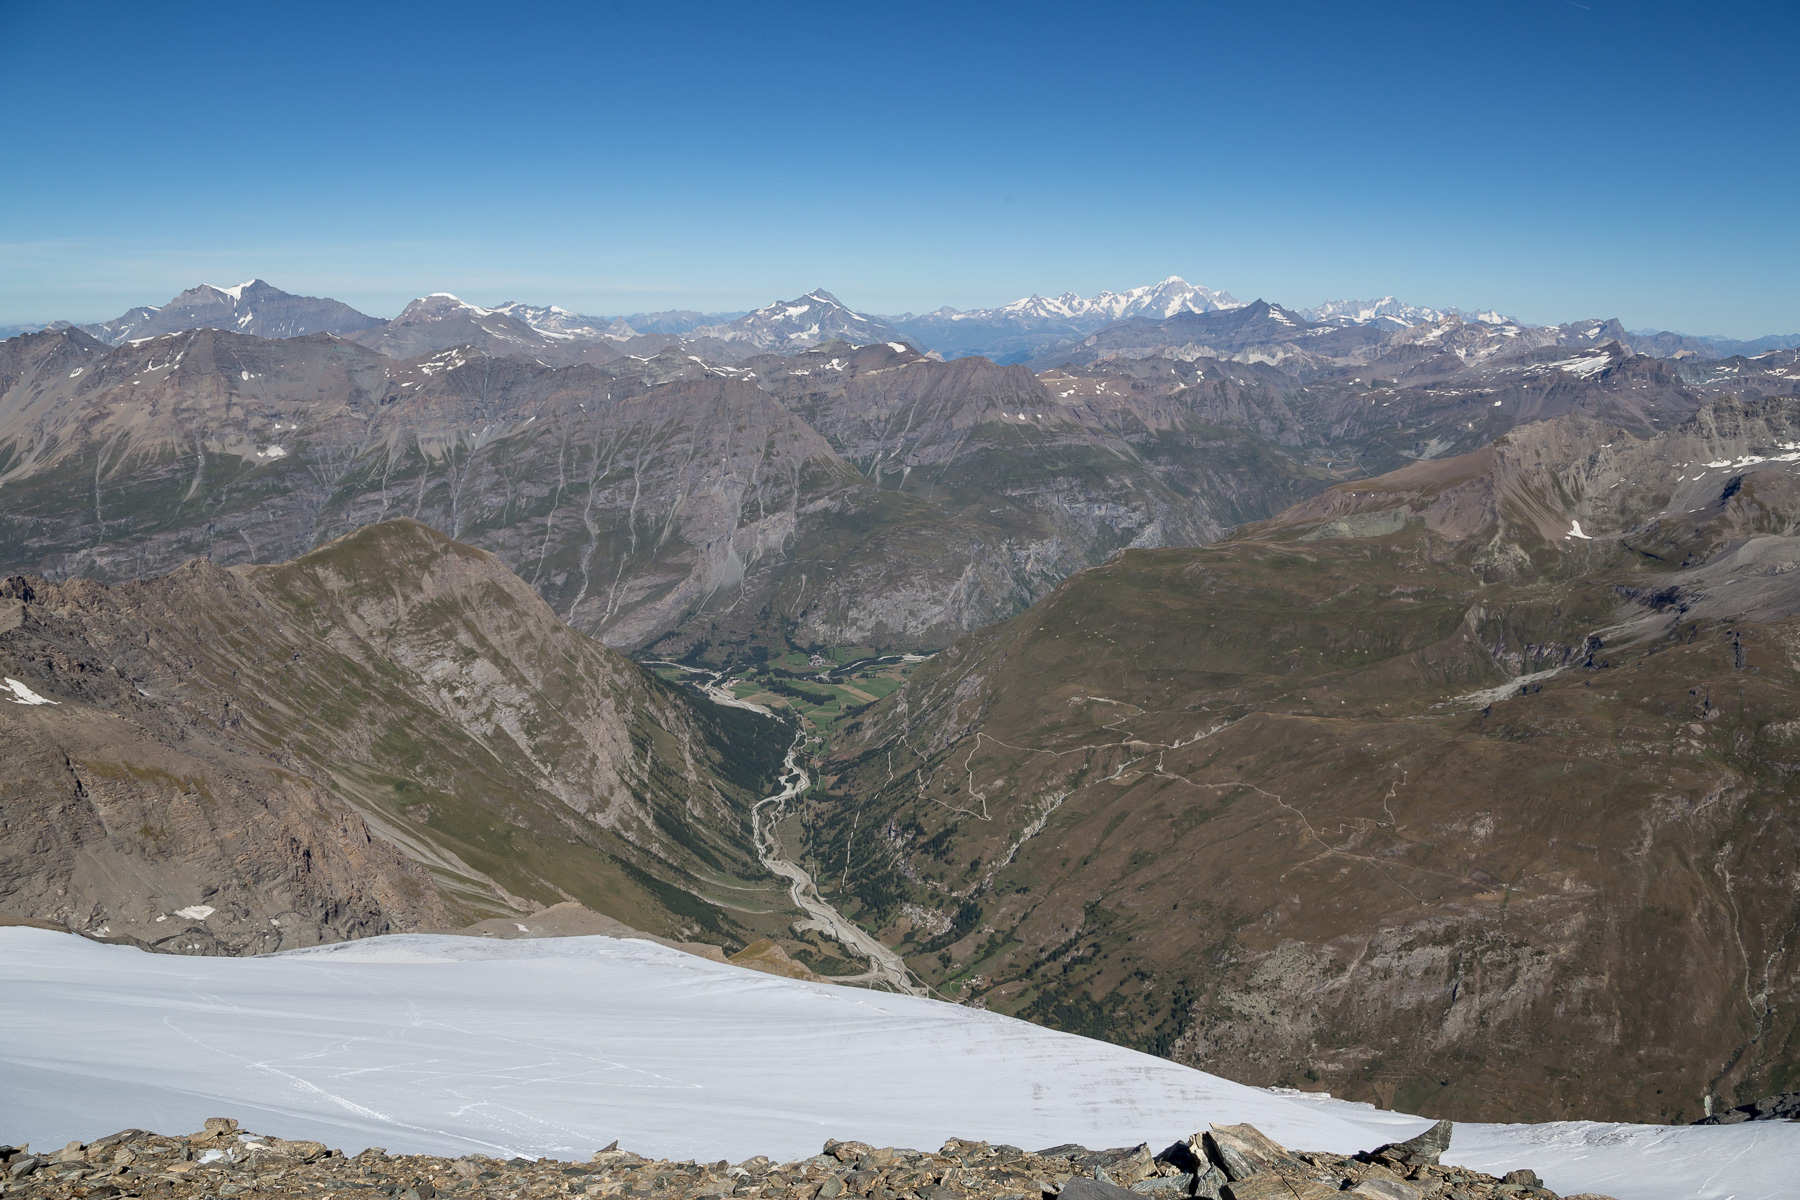 Tiefblick zum Parkplatz und zur Grande Casse (3.855 m), Mont Pourri (3.779 m), Mont Blanc (4.807 m) und Grandes Jorasses (4.208 m).